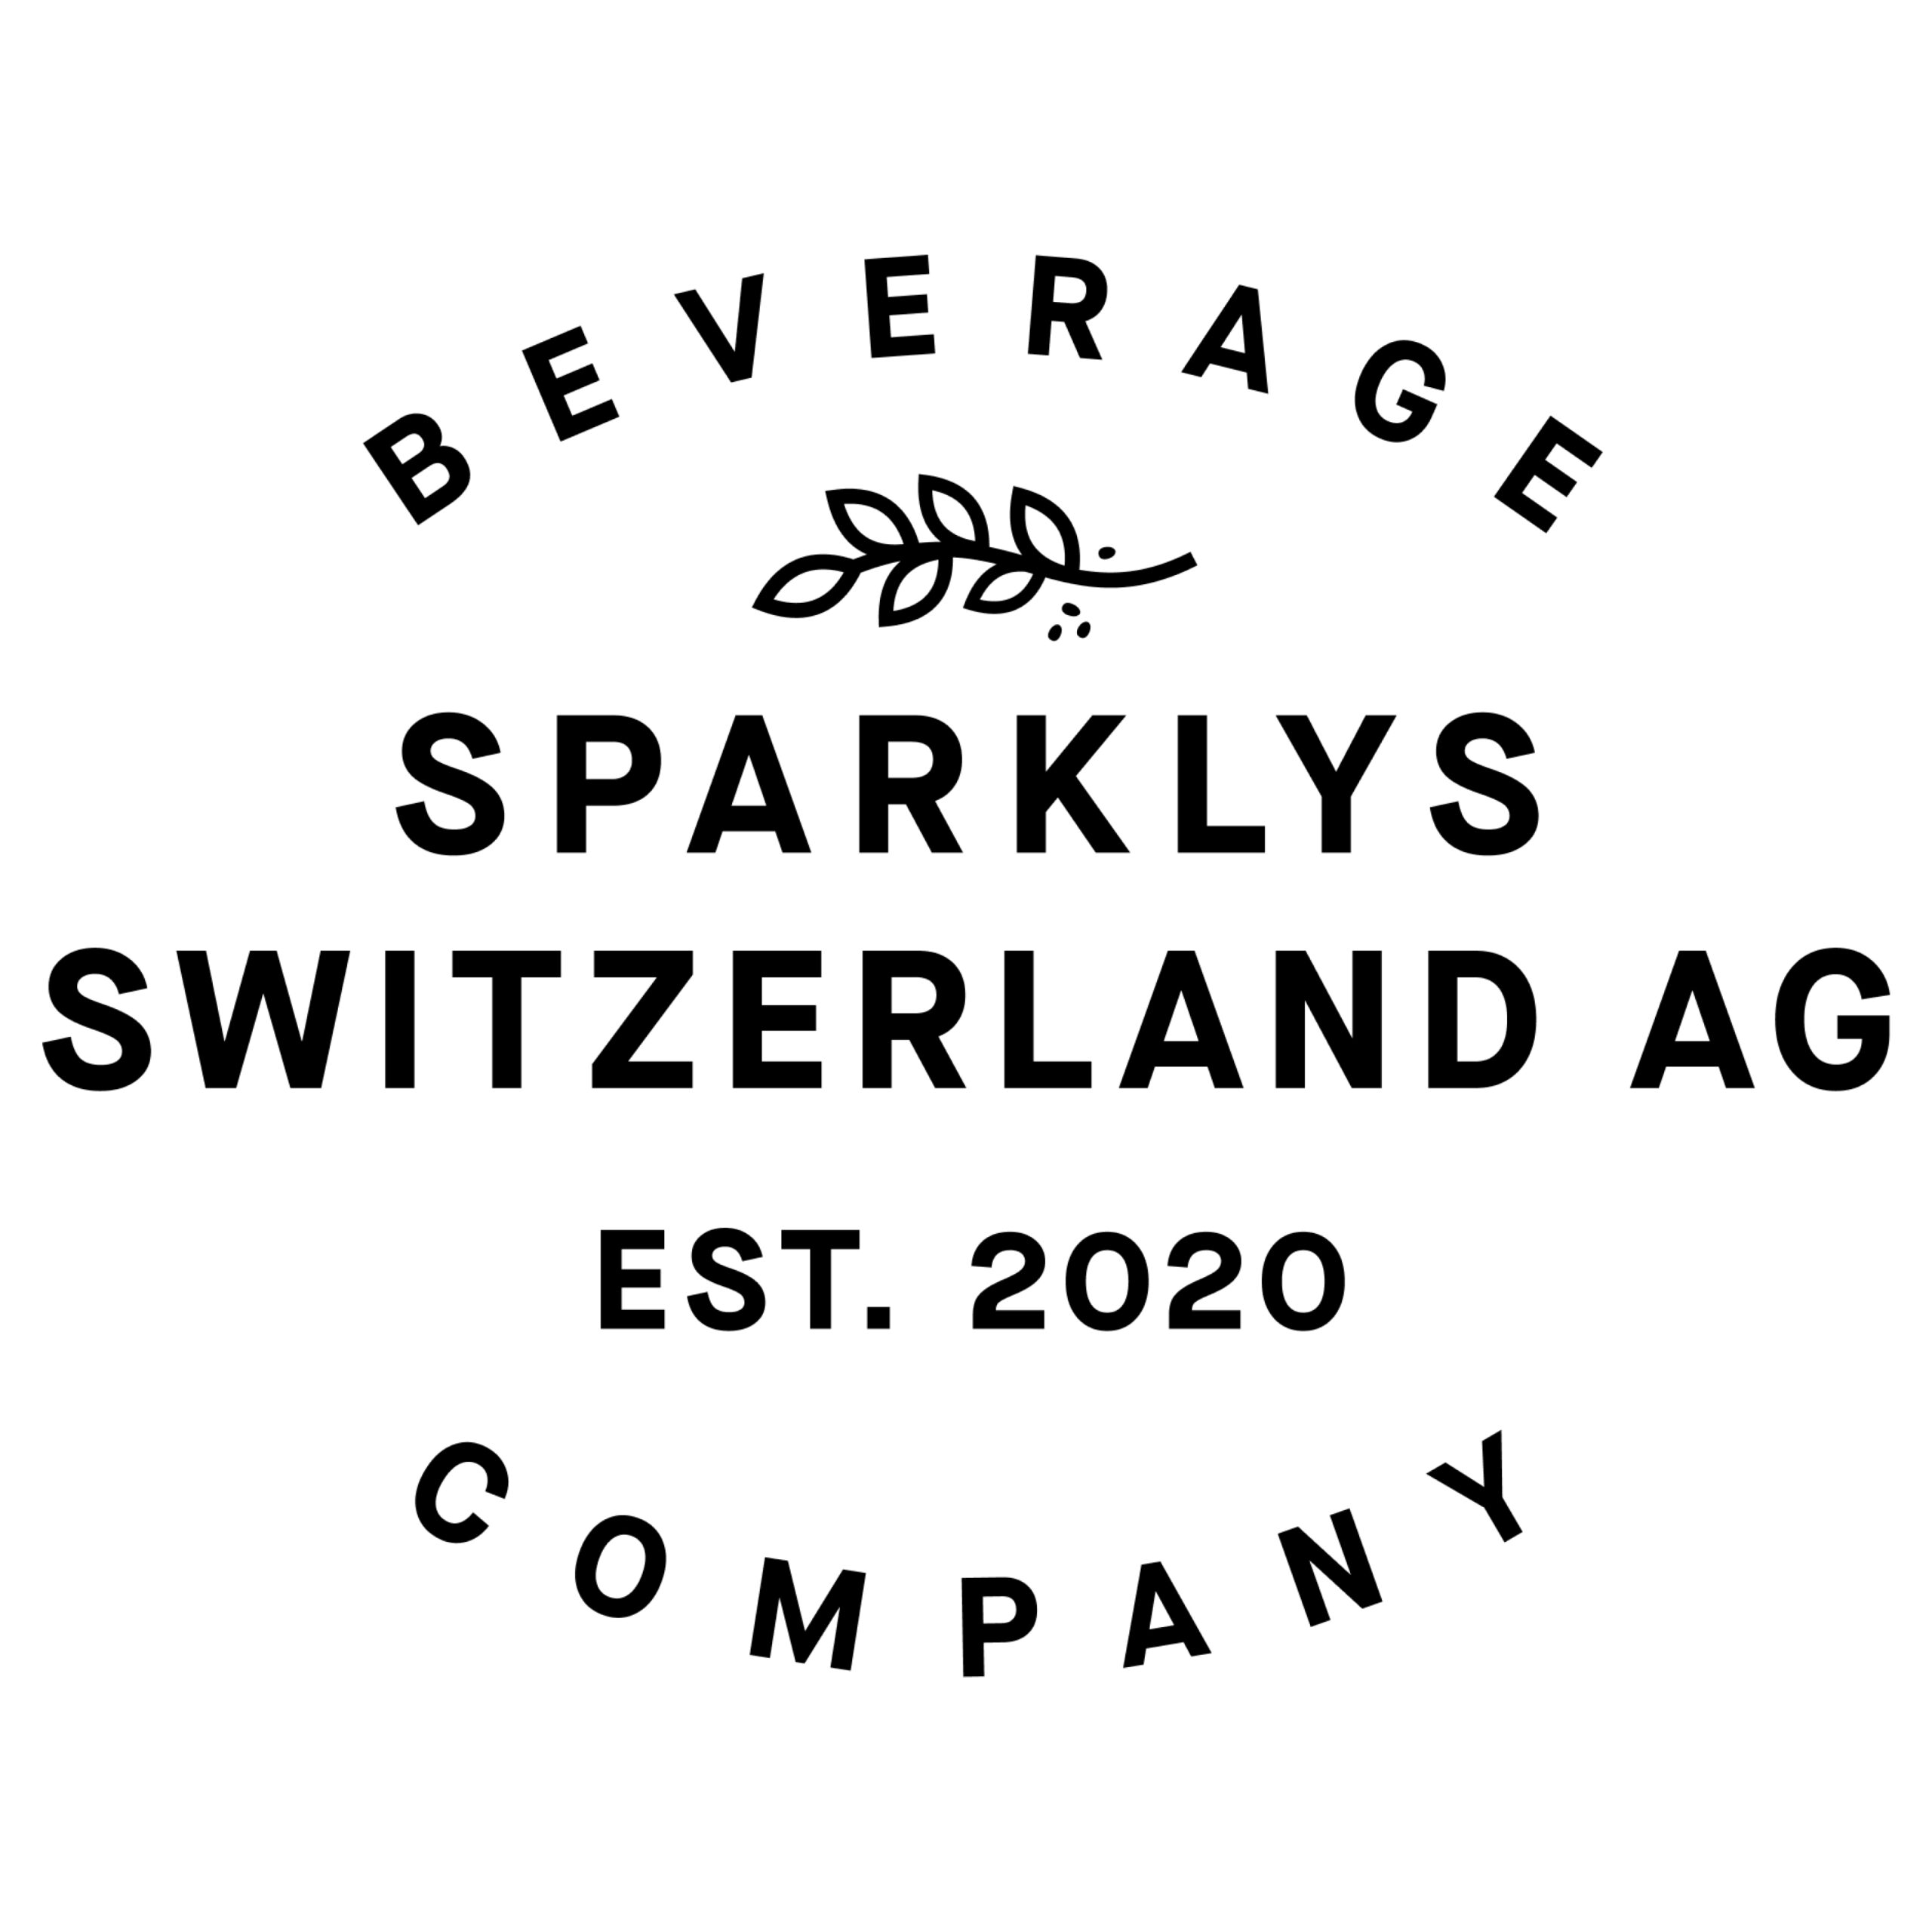 Sparklys Switzerland AG